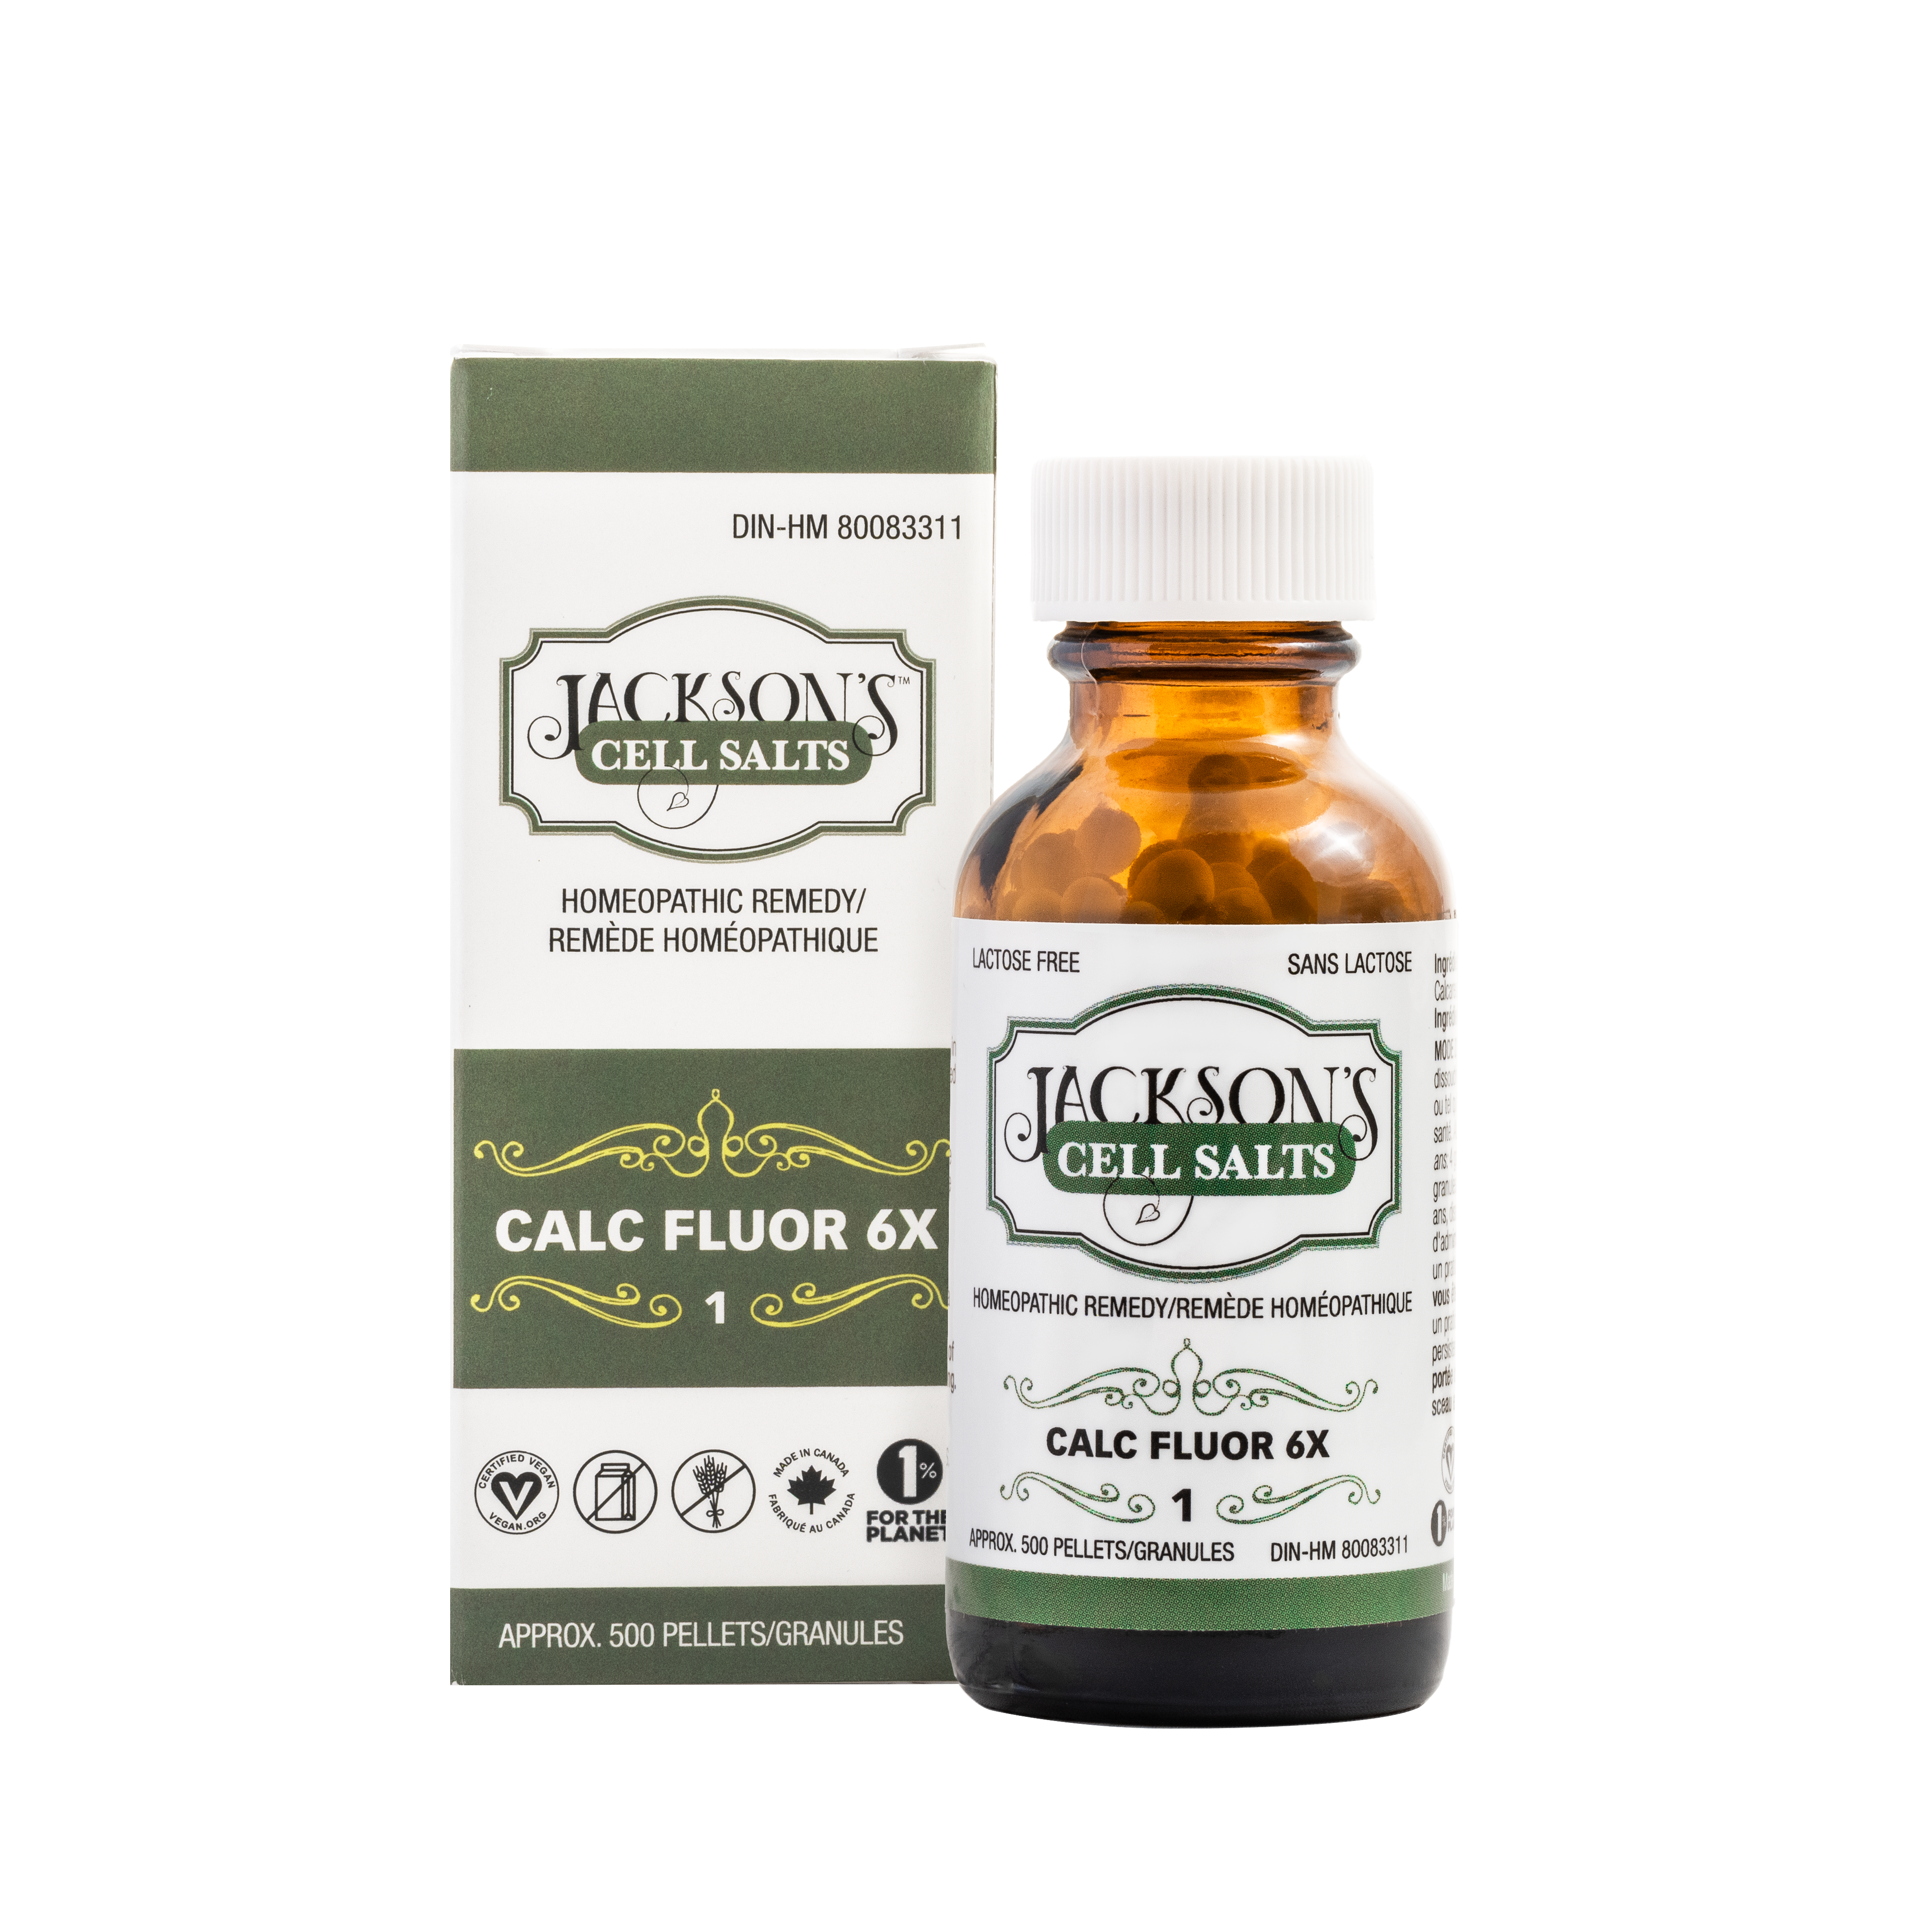 #1 Calc fluor 6X (fluorure de calcium) - Sel de cellules de Schuessler (tissus) certifié végétalien et sans lactose